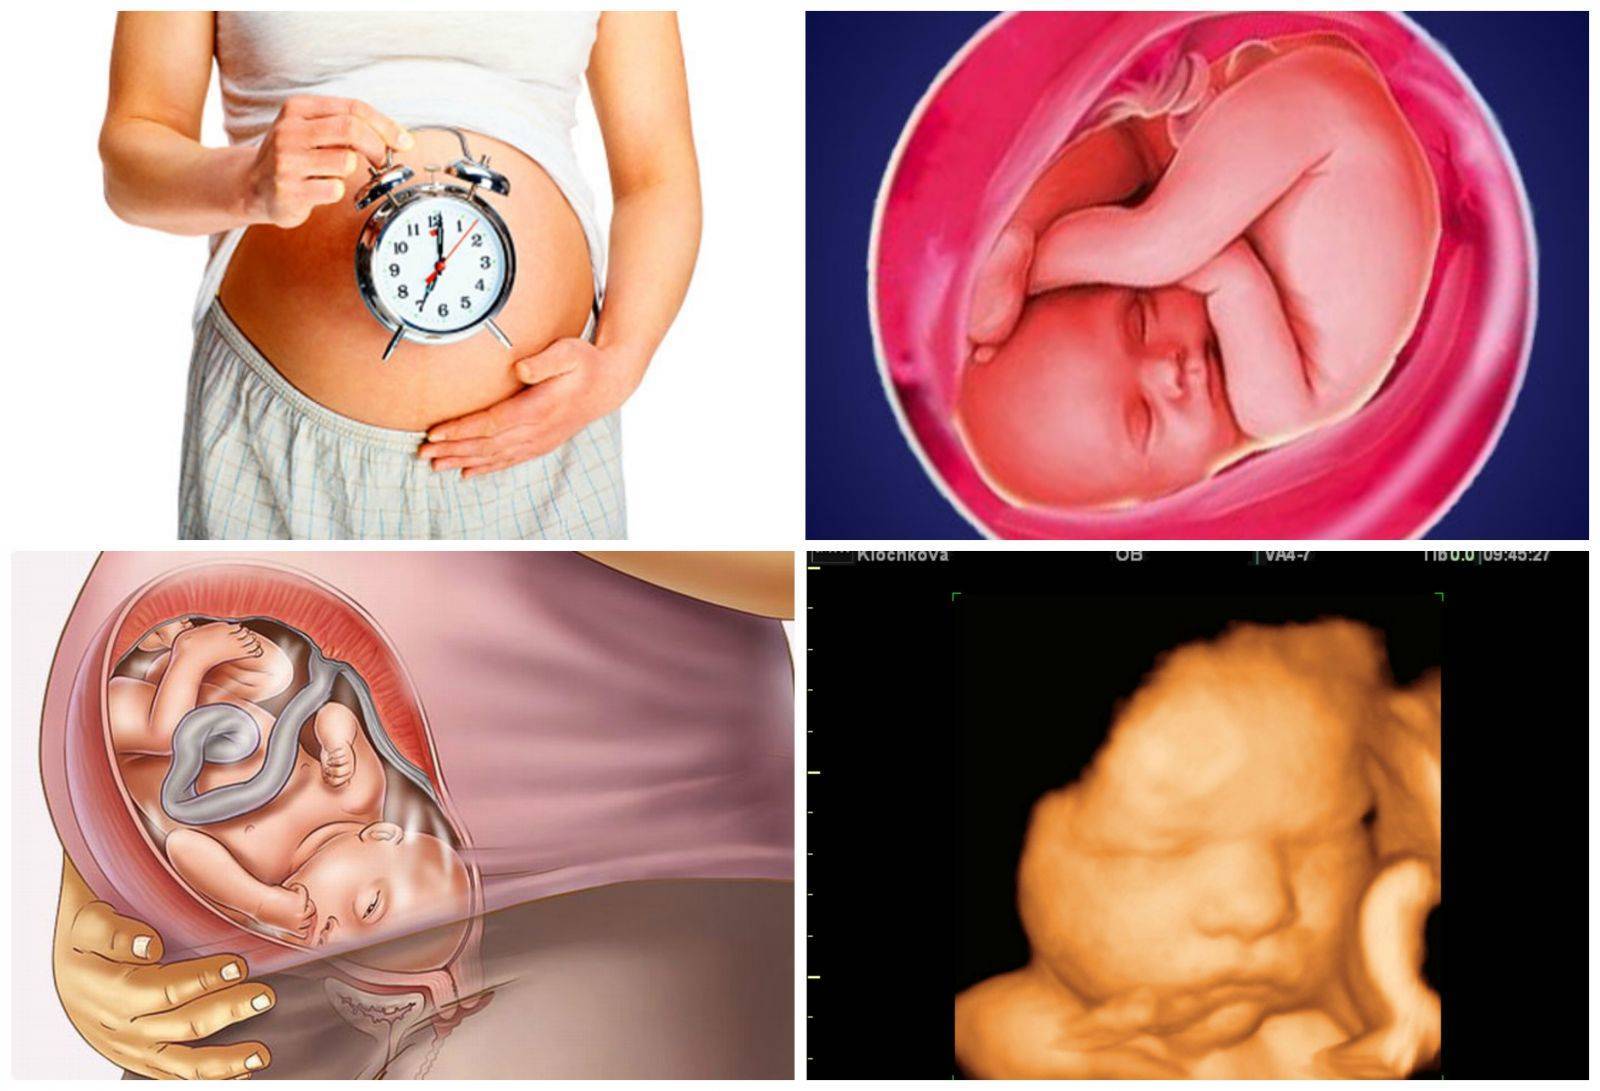 Что происходит с мамой и малышом во время 36 недели беременности, опасны ли роды на этом сроке?